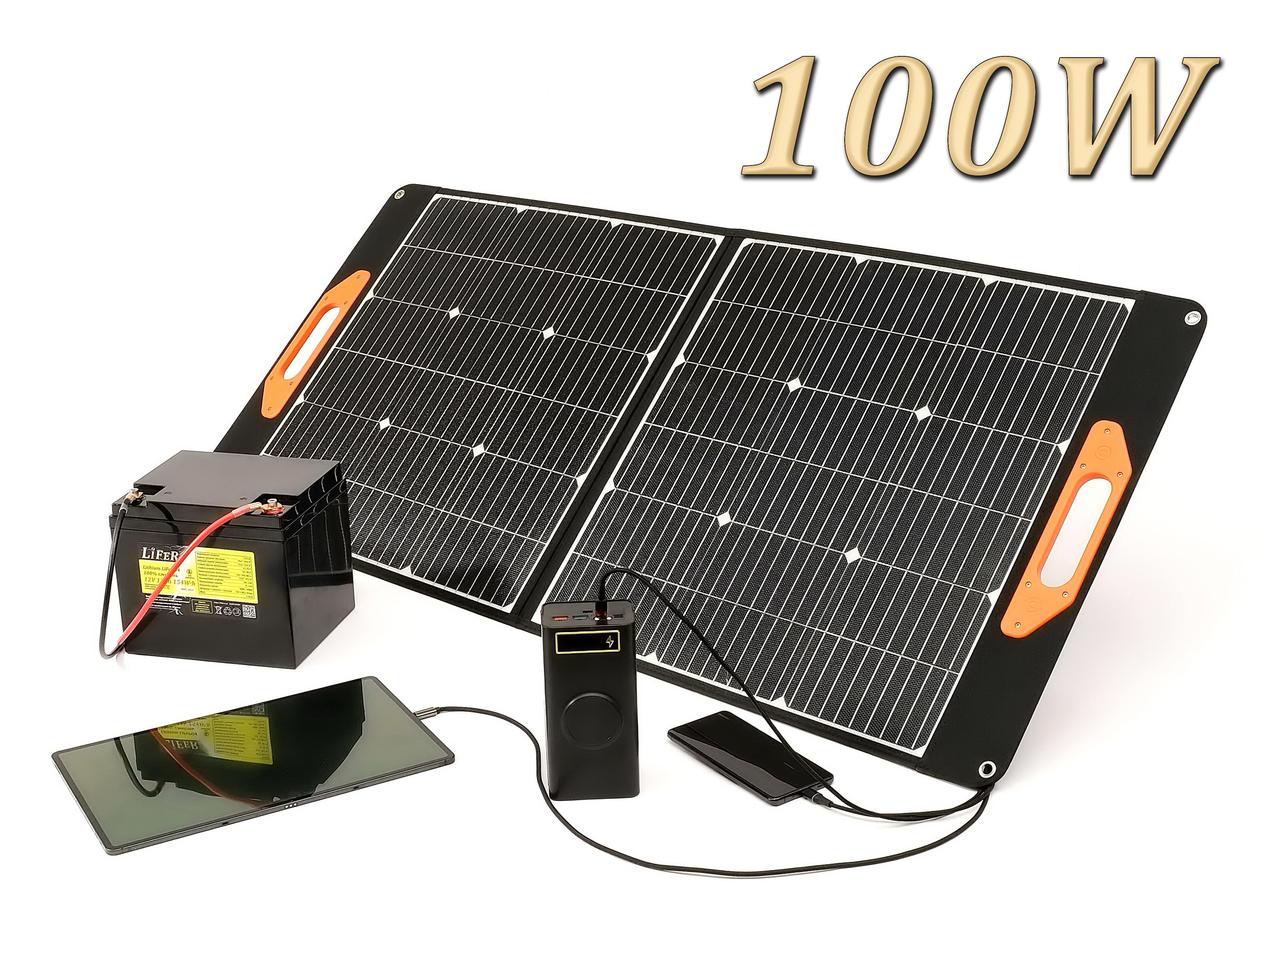 ETFE 100 Вт. Портативна сонячна батарея  LiFeR, Станція, Панель для заряджання телефона. Сонячна панель 12 вольтів